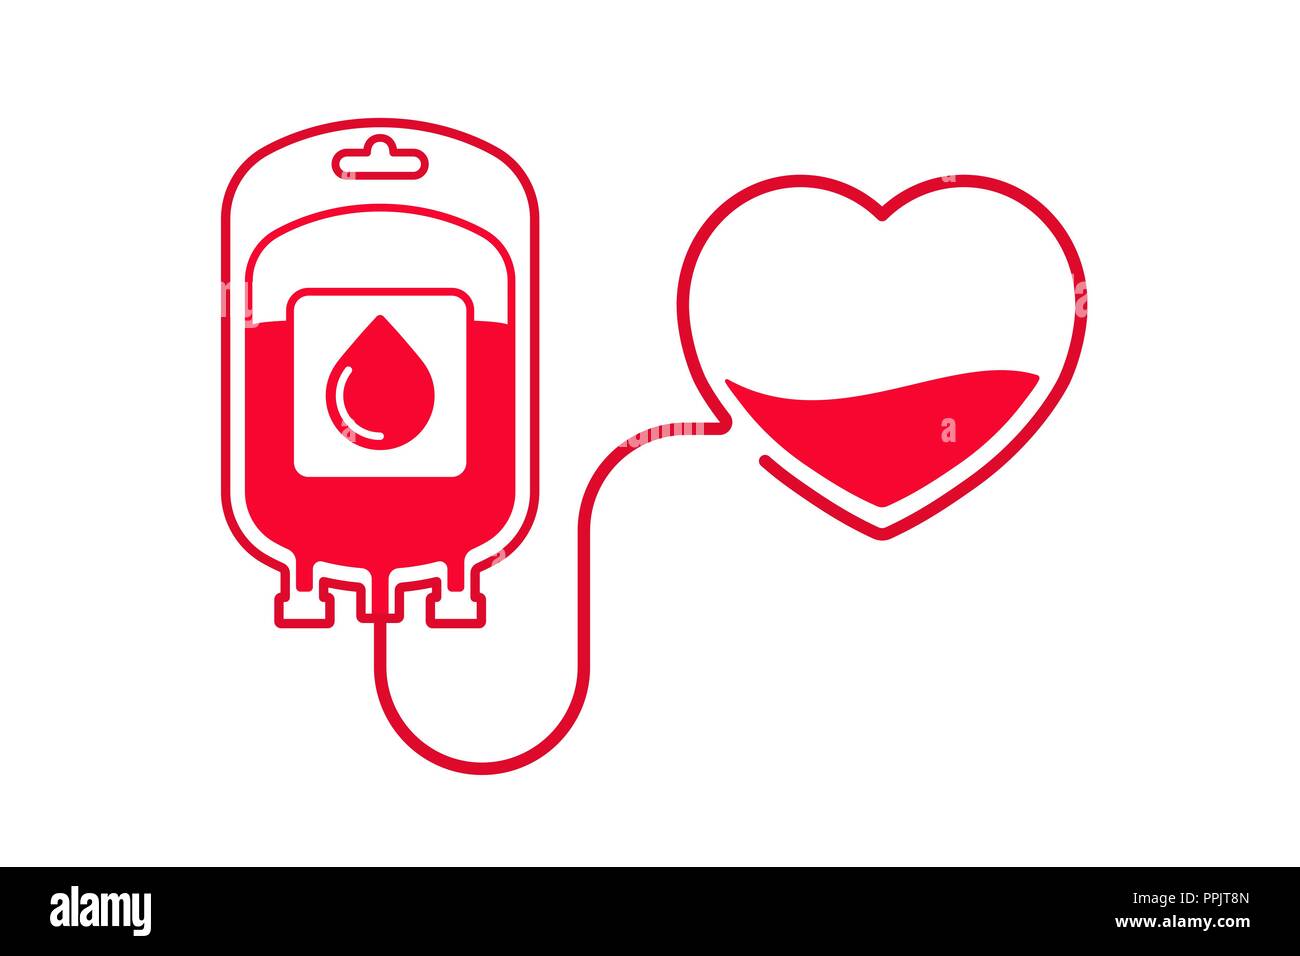 Don de sang vector illustration isolé sur fond blanc. Faire un don de sang concept avec poche de sang et le coeur. Journée mondiale du don de sang - le 14 juin. Illustration de Vecteur